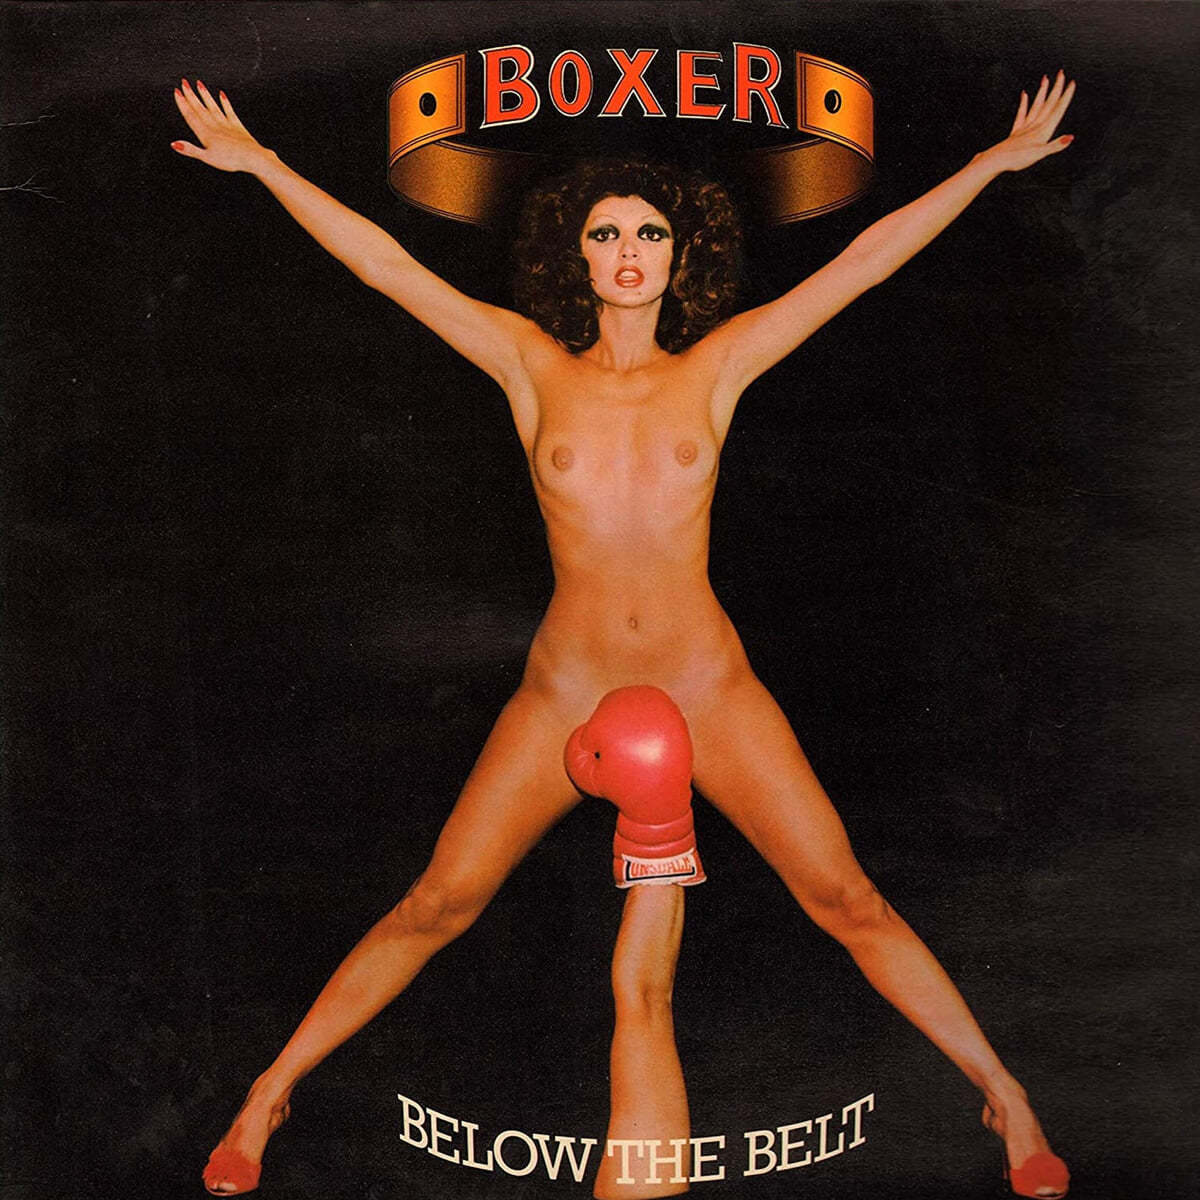 Boxer (박서) - Below The Belt 